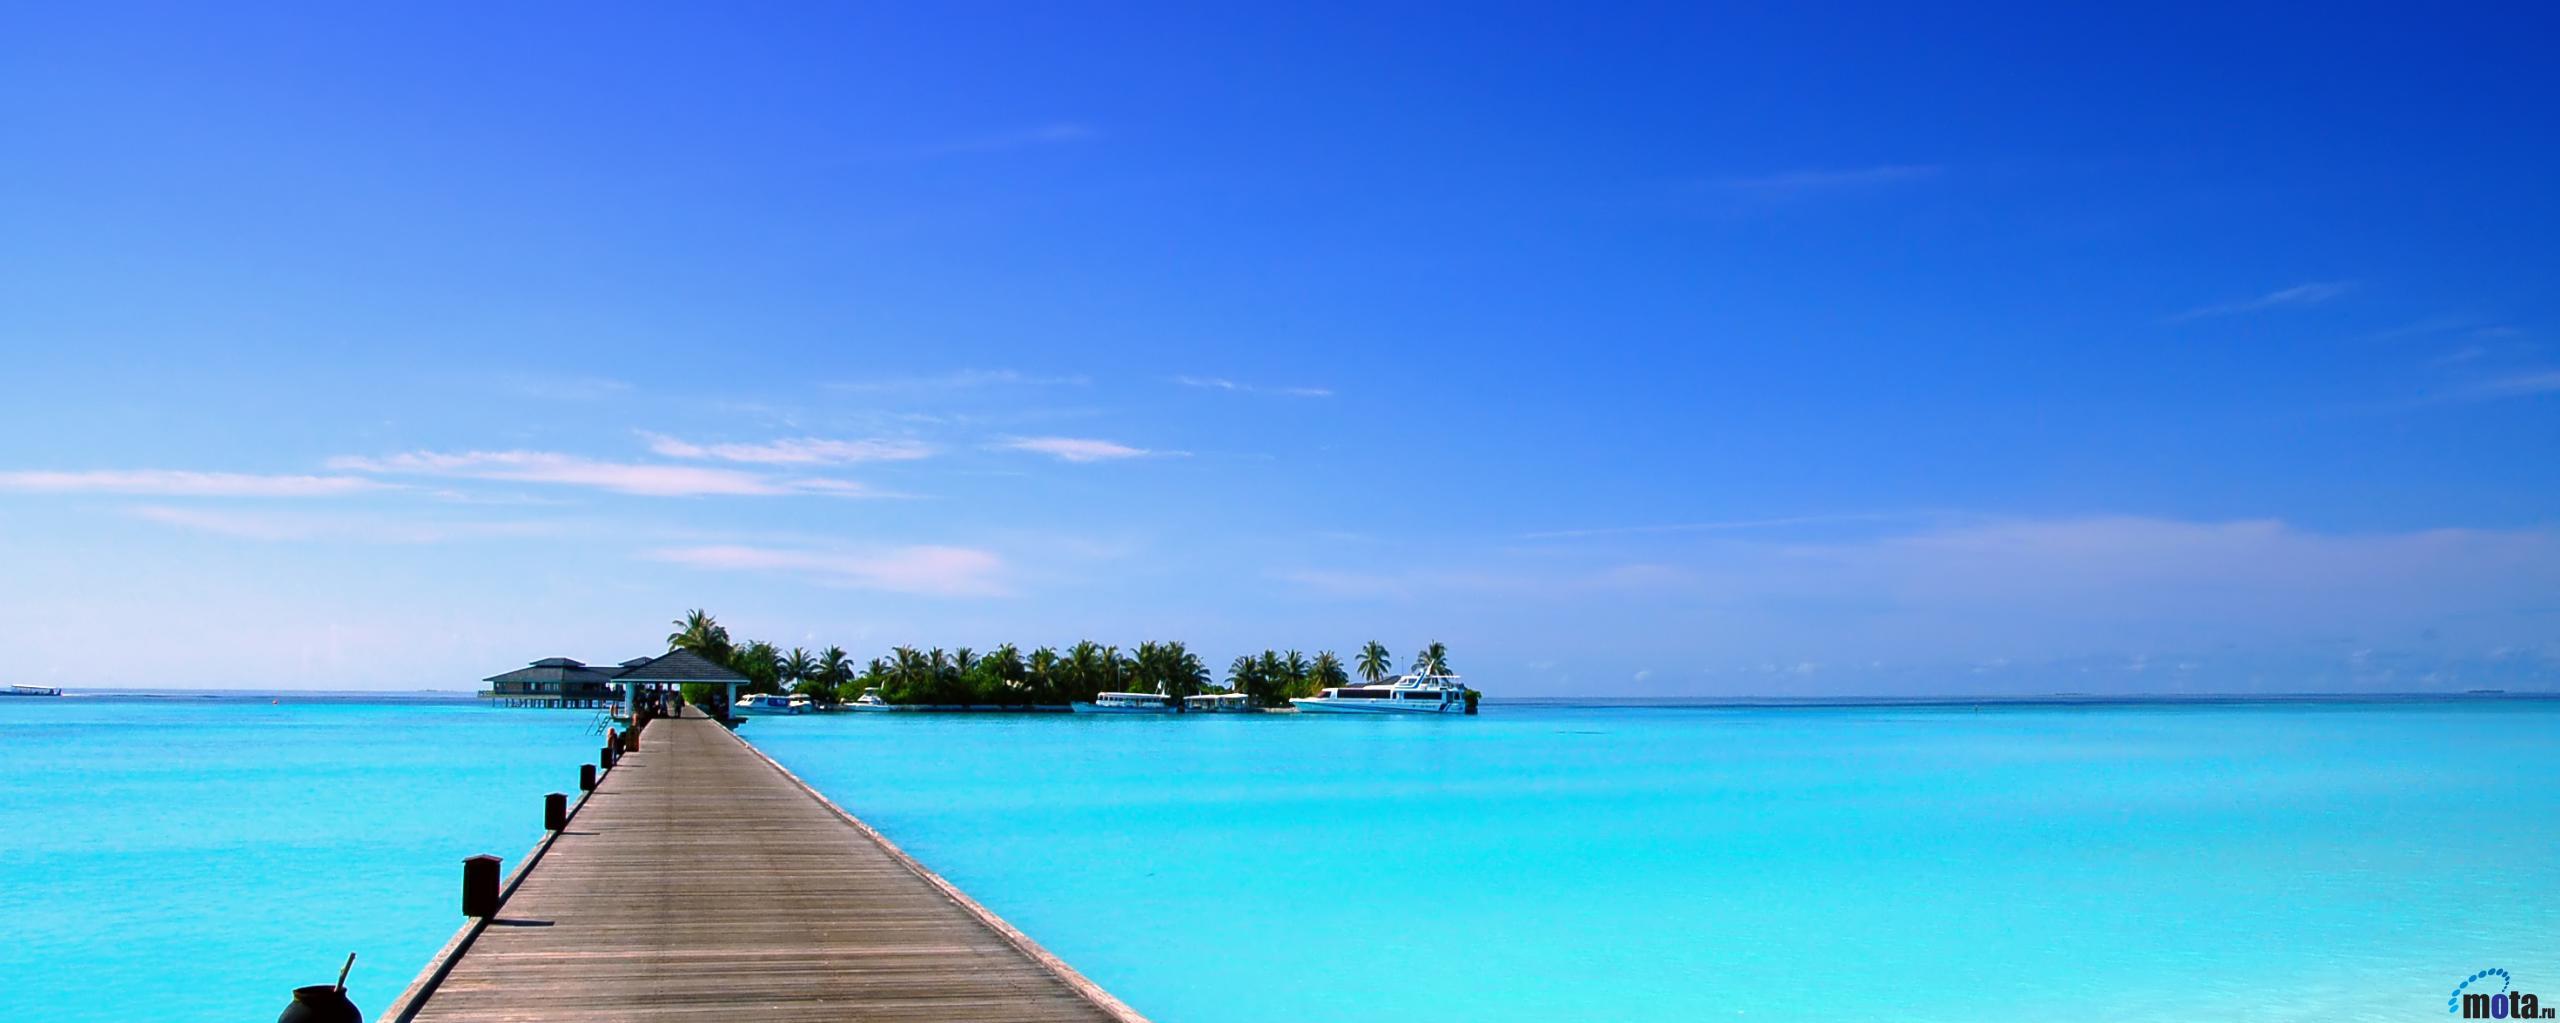 Maldives Tropical Beach Island HD Wallpaper